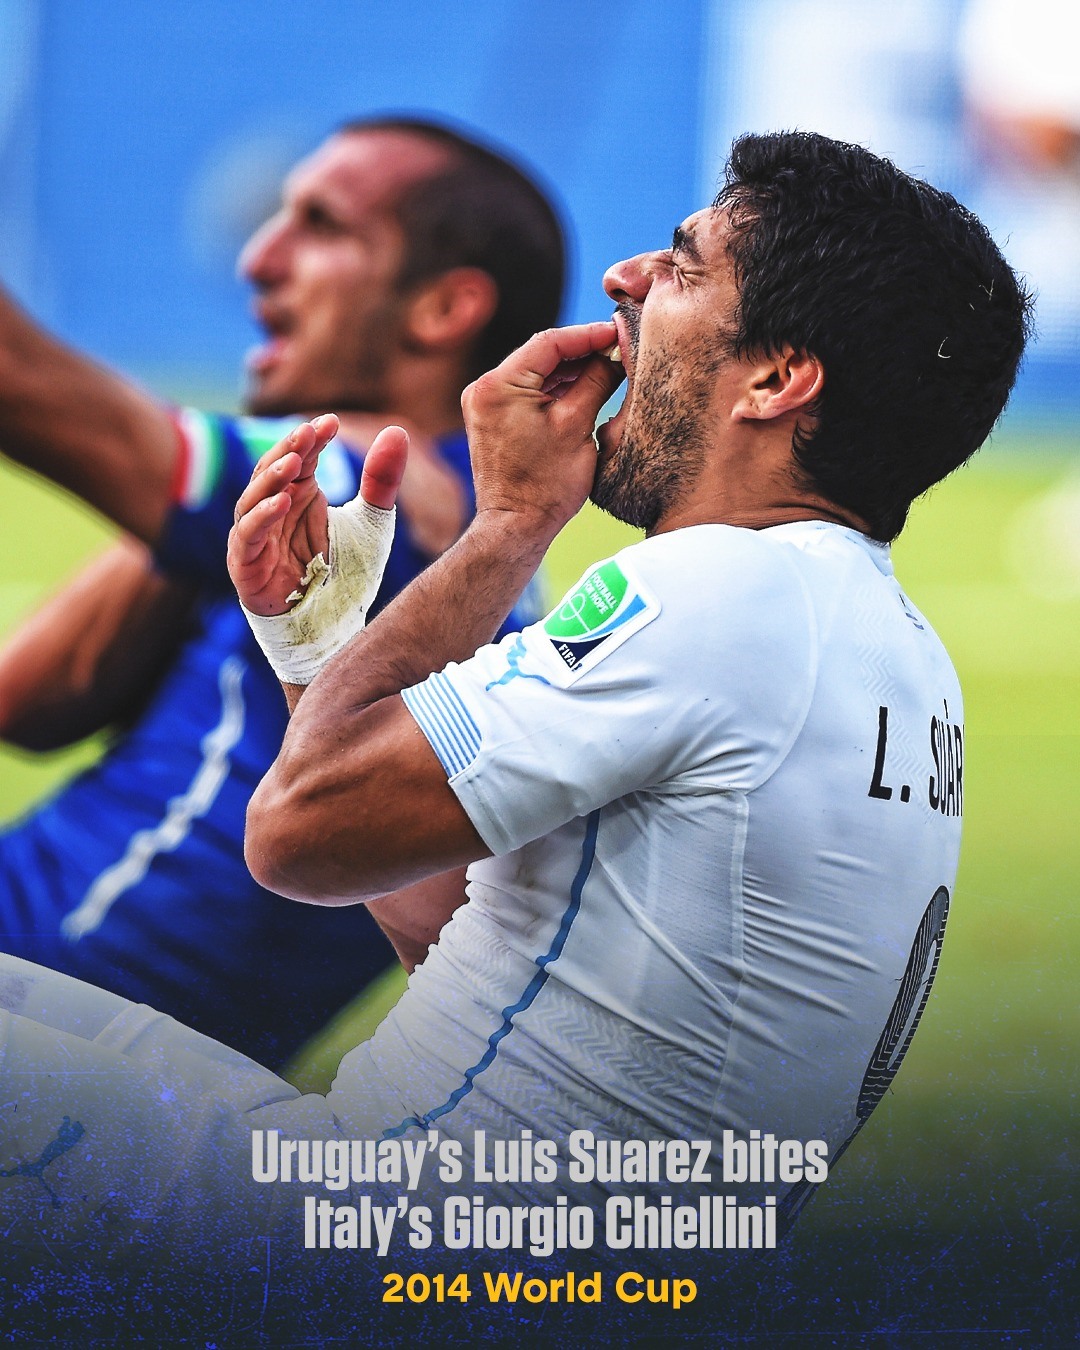 Ở trận Uruguay vs Italia tại vòng bảng World Cup 2014, tiền đạo Luis Suarez đã có pha bóng tai tiếng. Chân sút này đã cắn vào vai của trung vệ Chiellini bên phía Italia. Suarez không bị trọng tài rút thẻ đỏ nhưng sau đó anh bị FIFA phạt nguội, cấm tham gia các hoạt động bóng đá trong 4 tháng, nộp phạt 65.000 bảng Anh.